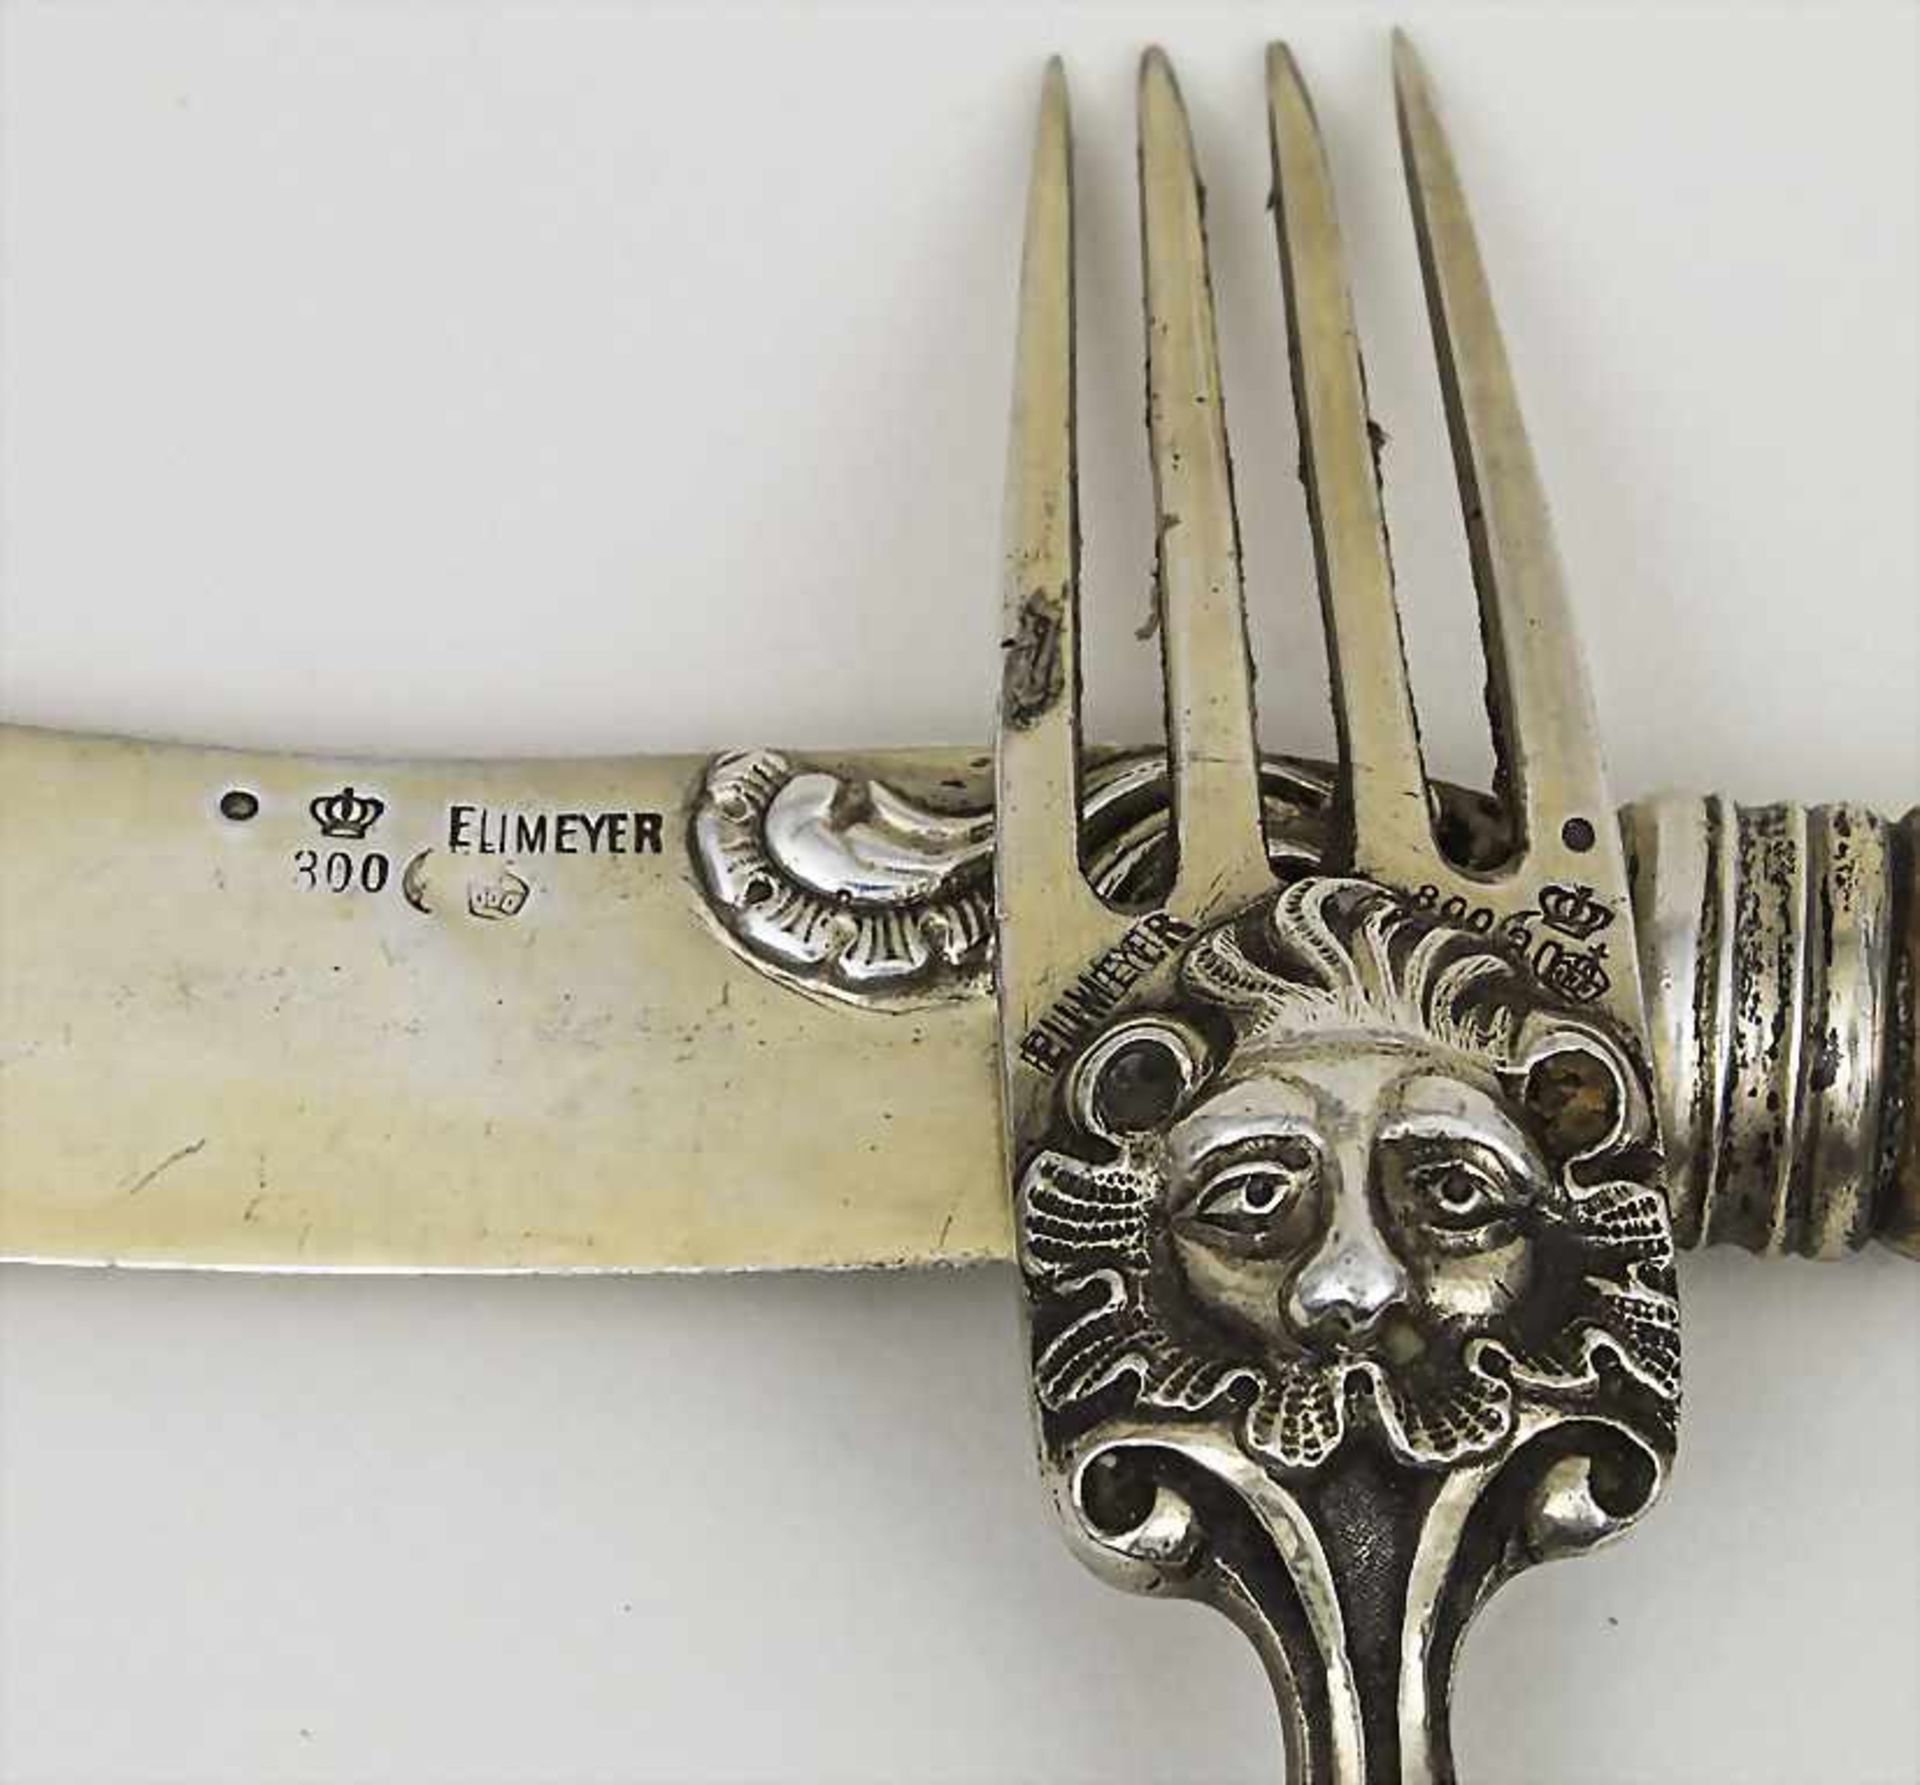 Messer und Gabel mit Kauffahrteiszenen / A knife and fork with porcelain handles, Meissen/Eumeyer, - Bild 2 aus 2